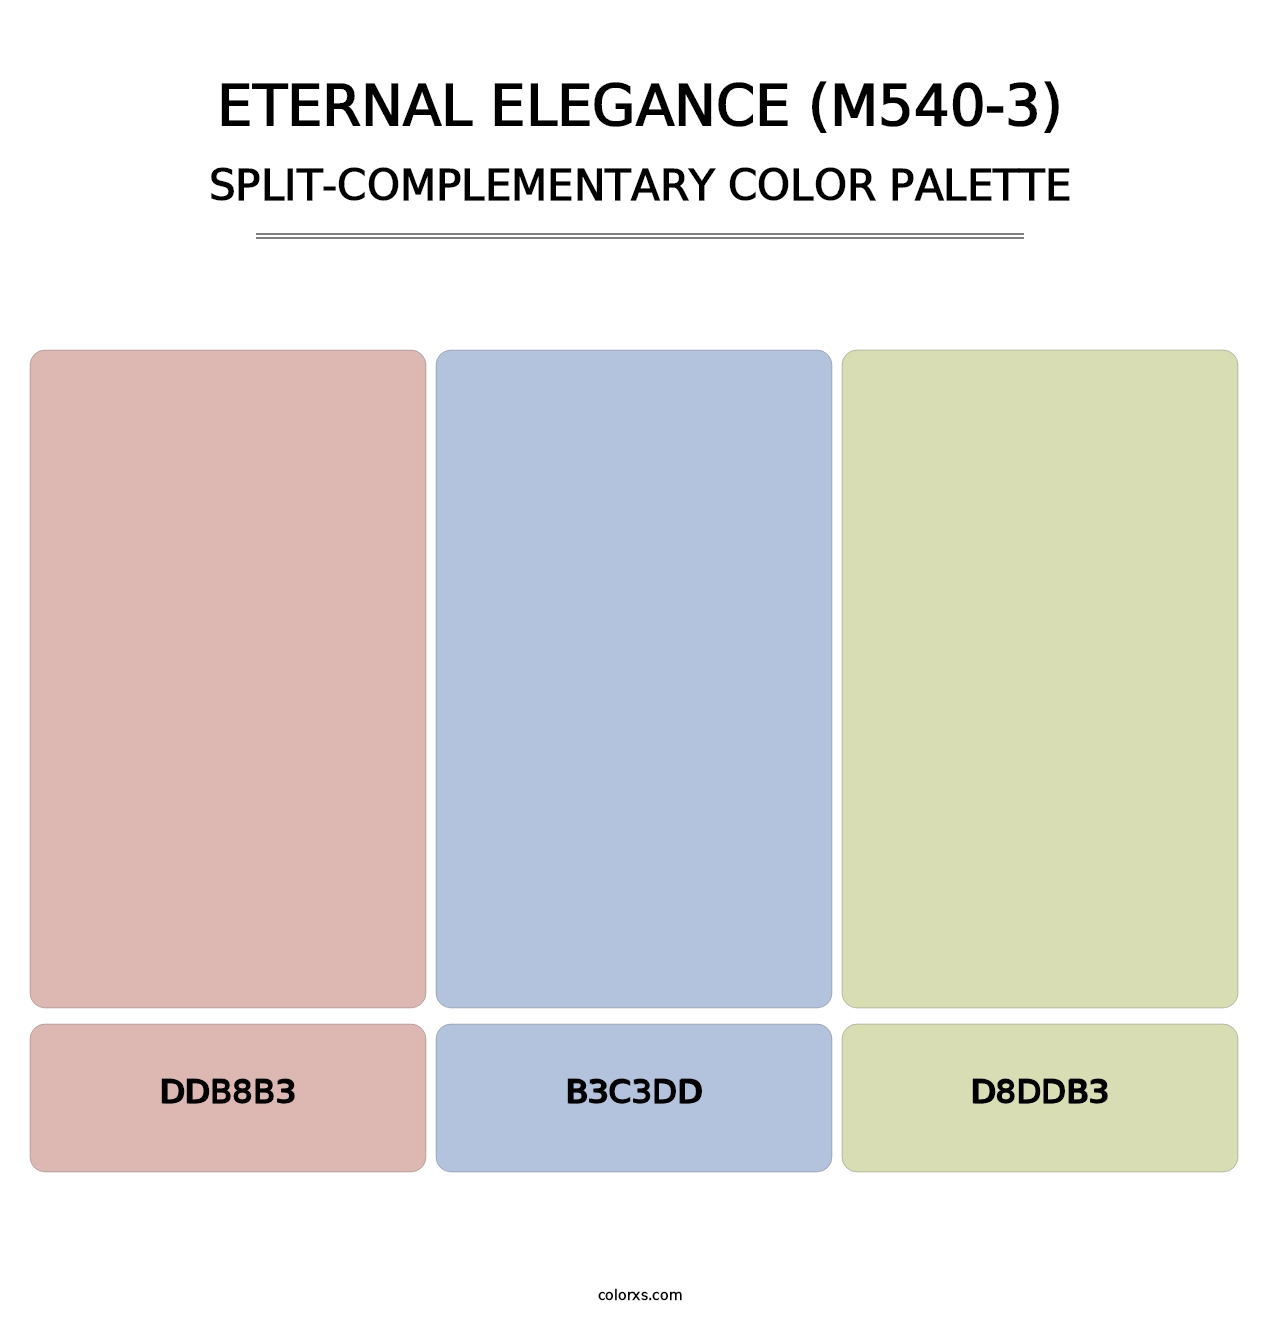 Eternal Elegance (M540-3) - Split-Complementary Color Palette